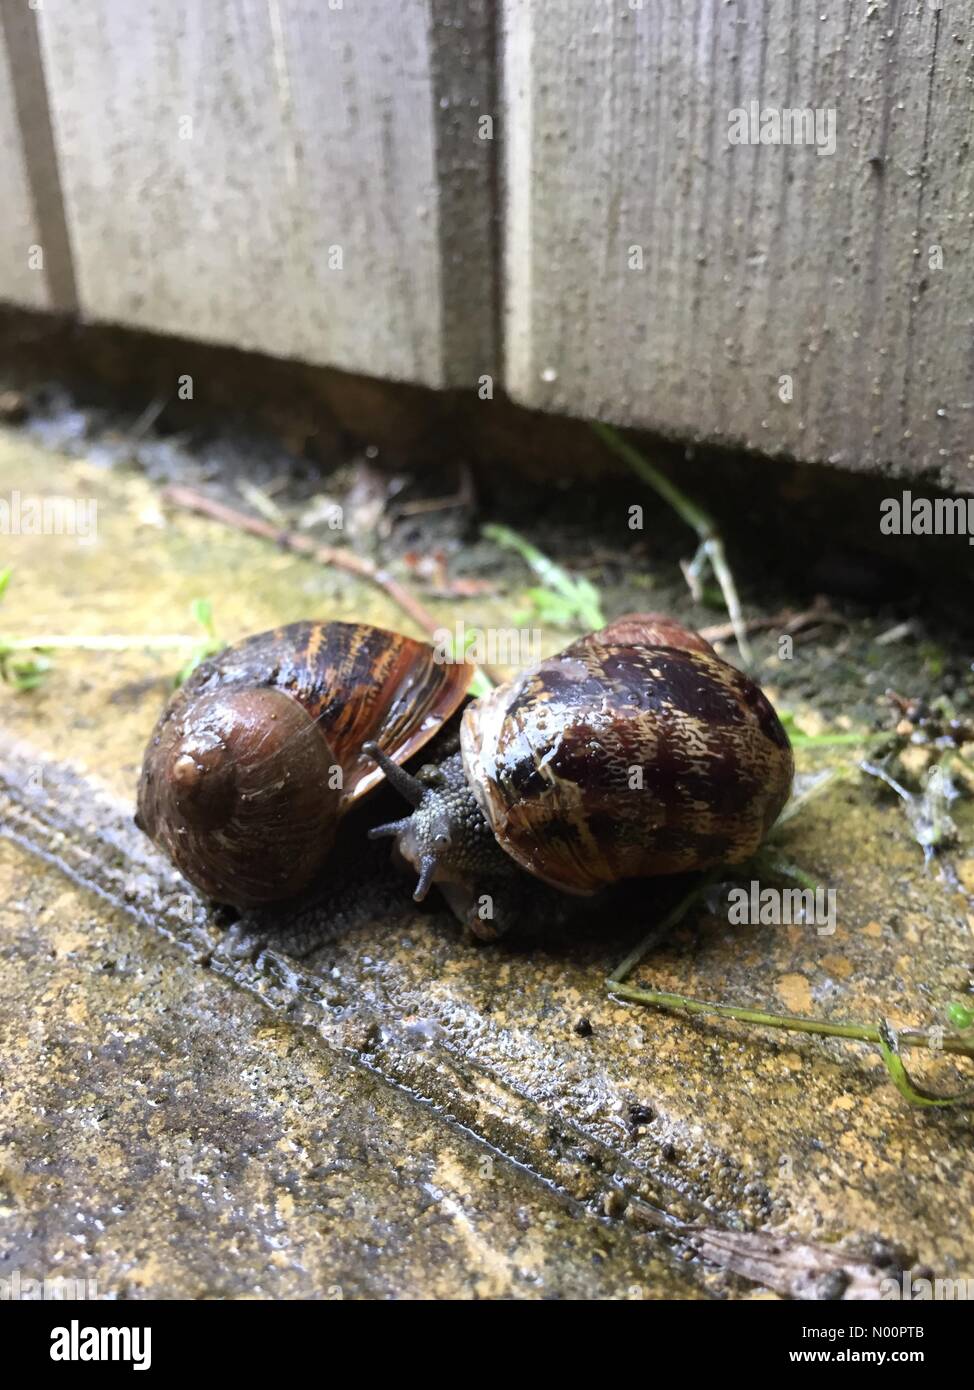 L'Oxfordshire, UK, 25 mai 2018. UK - Springtime escargots sur les dalles humides par un abri de jardin sur un vendredi matin. L'Oxfordshire, UK Crédit : Sharone Parnes/StockimoNews/Alamy Live News Banque D'Images